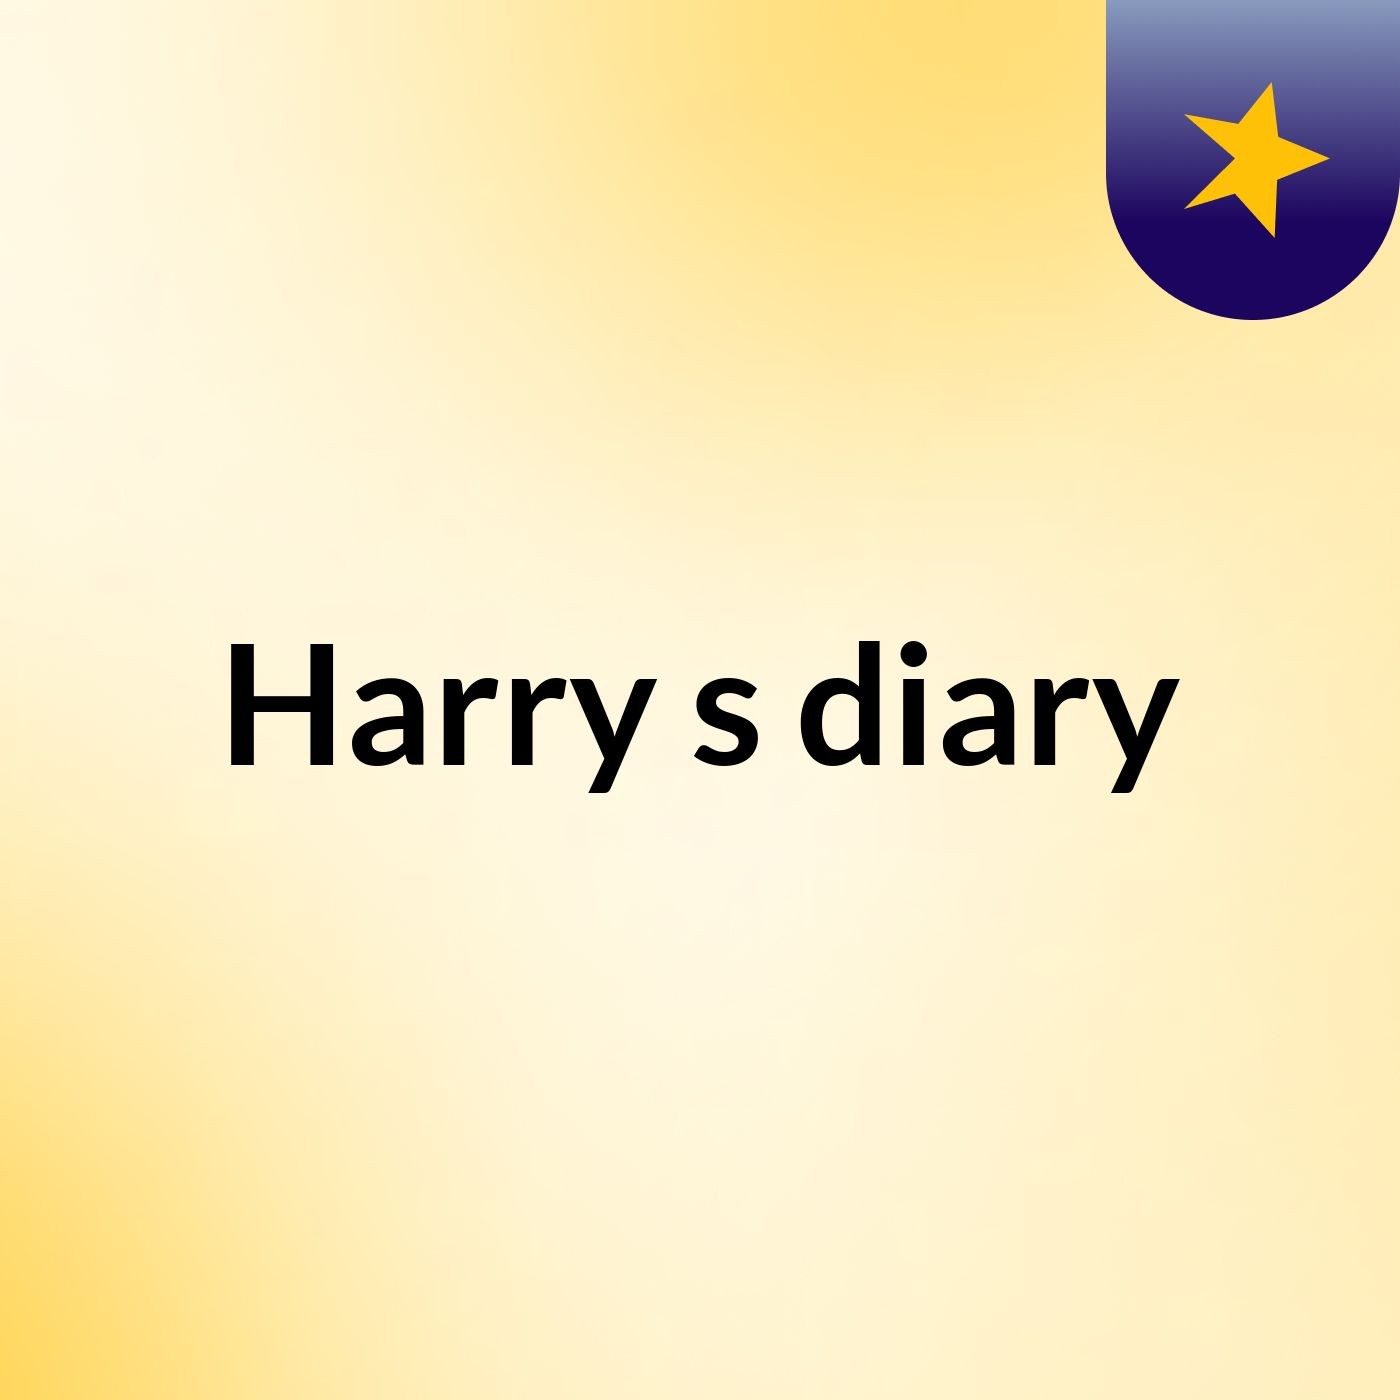 Harry's diary